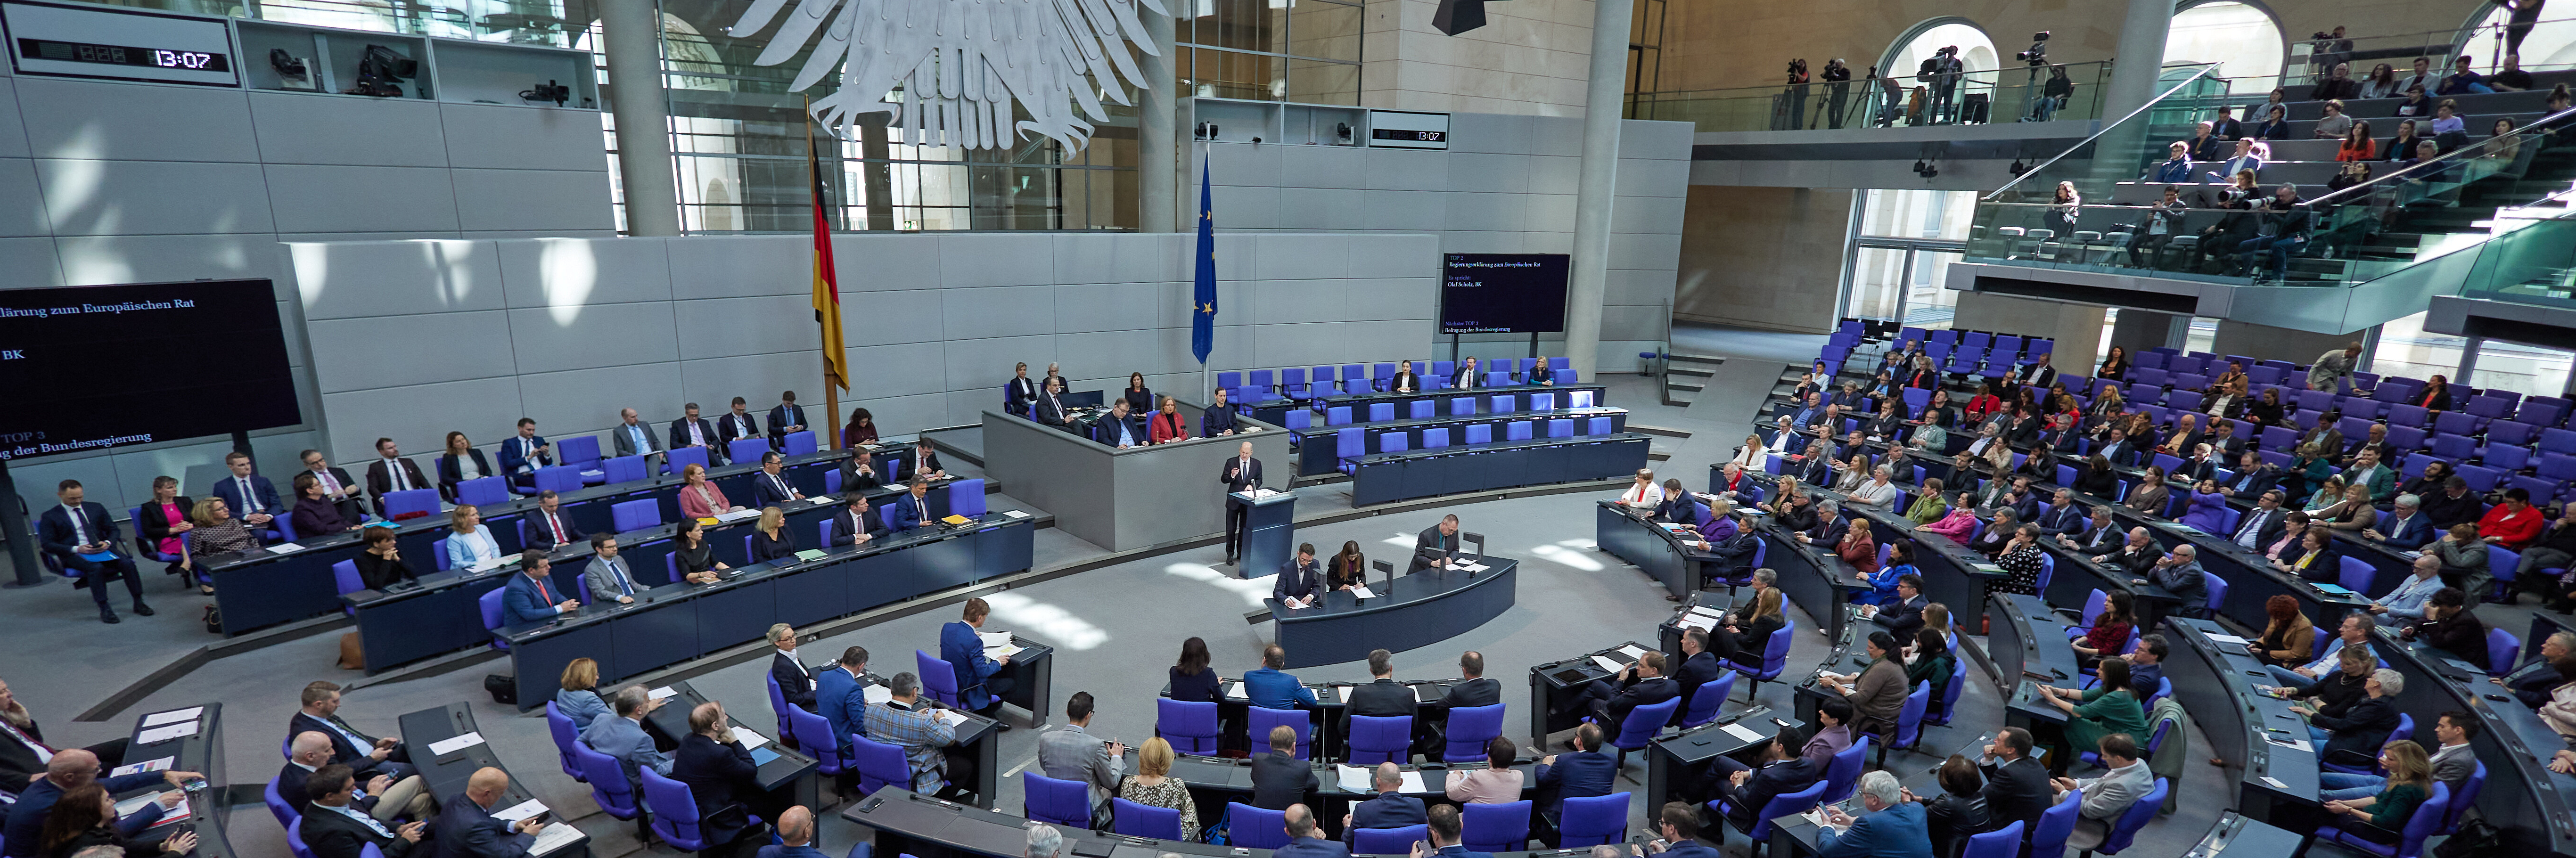 Plenarsaal des Deutschen Bundestags in einer Sitzung